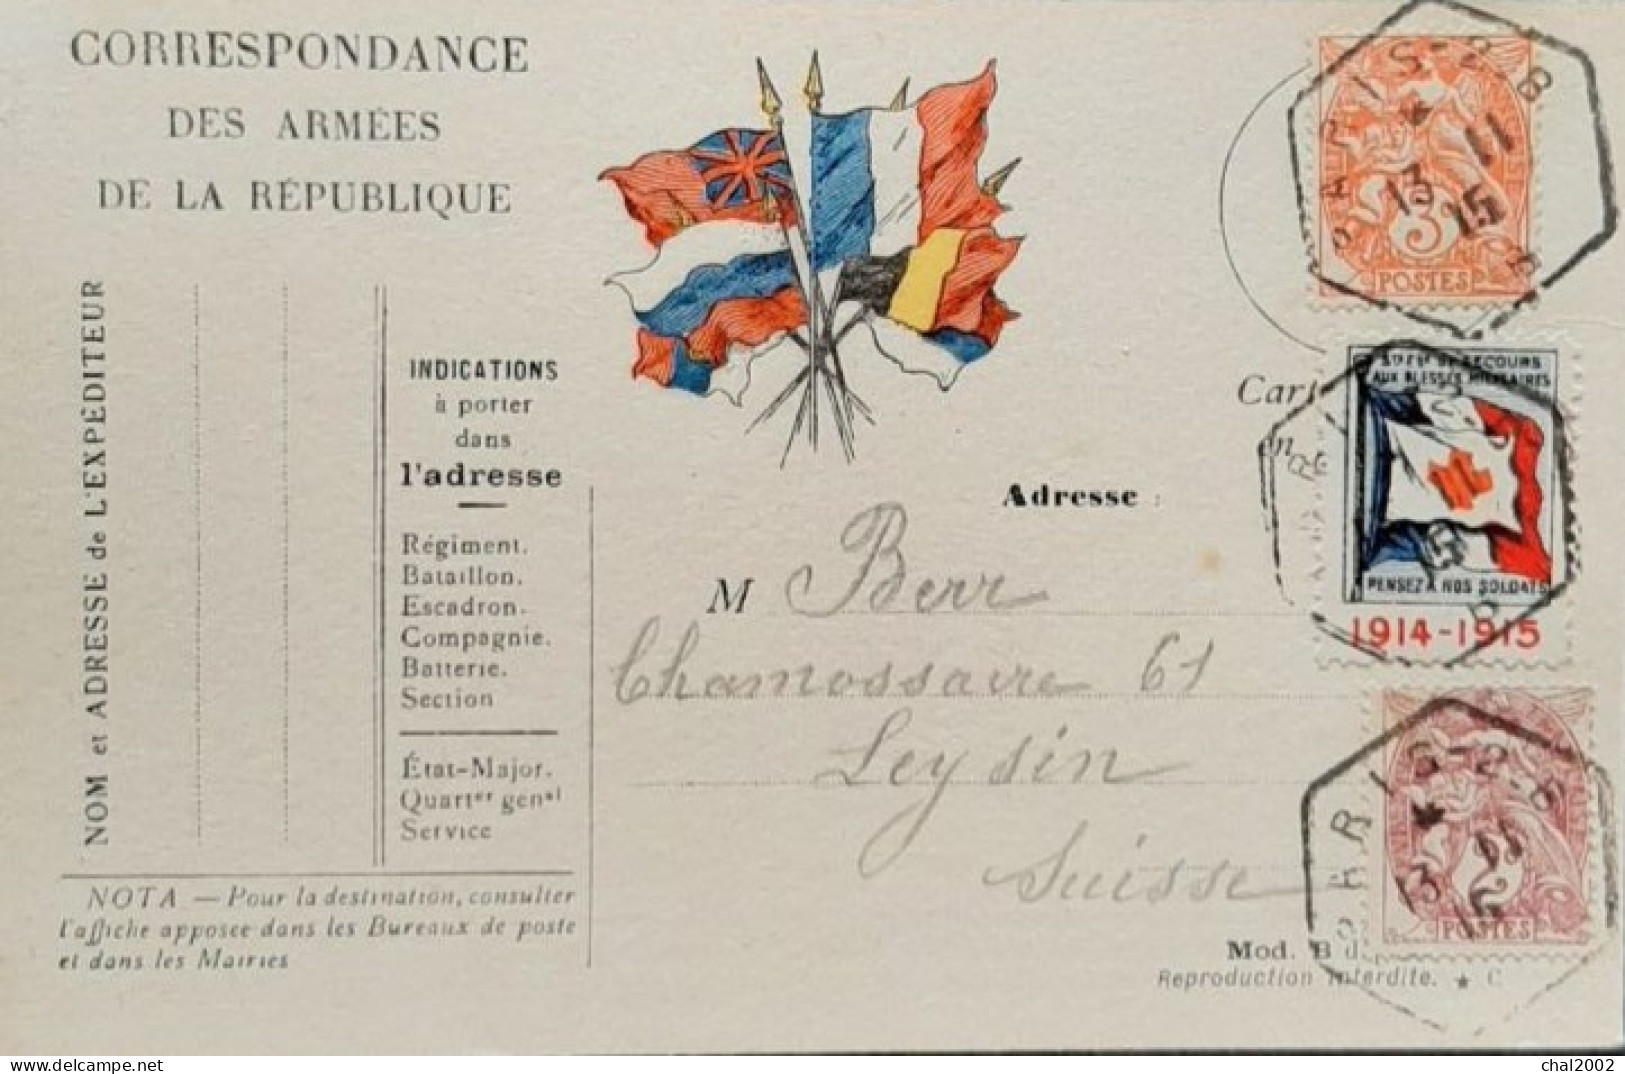 Carte Lettre De Paris 13 Novembre 1915 Pour Les Leysin  Suisse - Rode Kruis